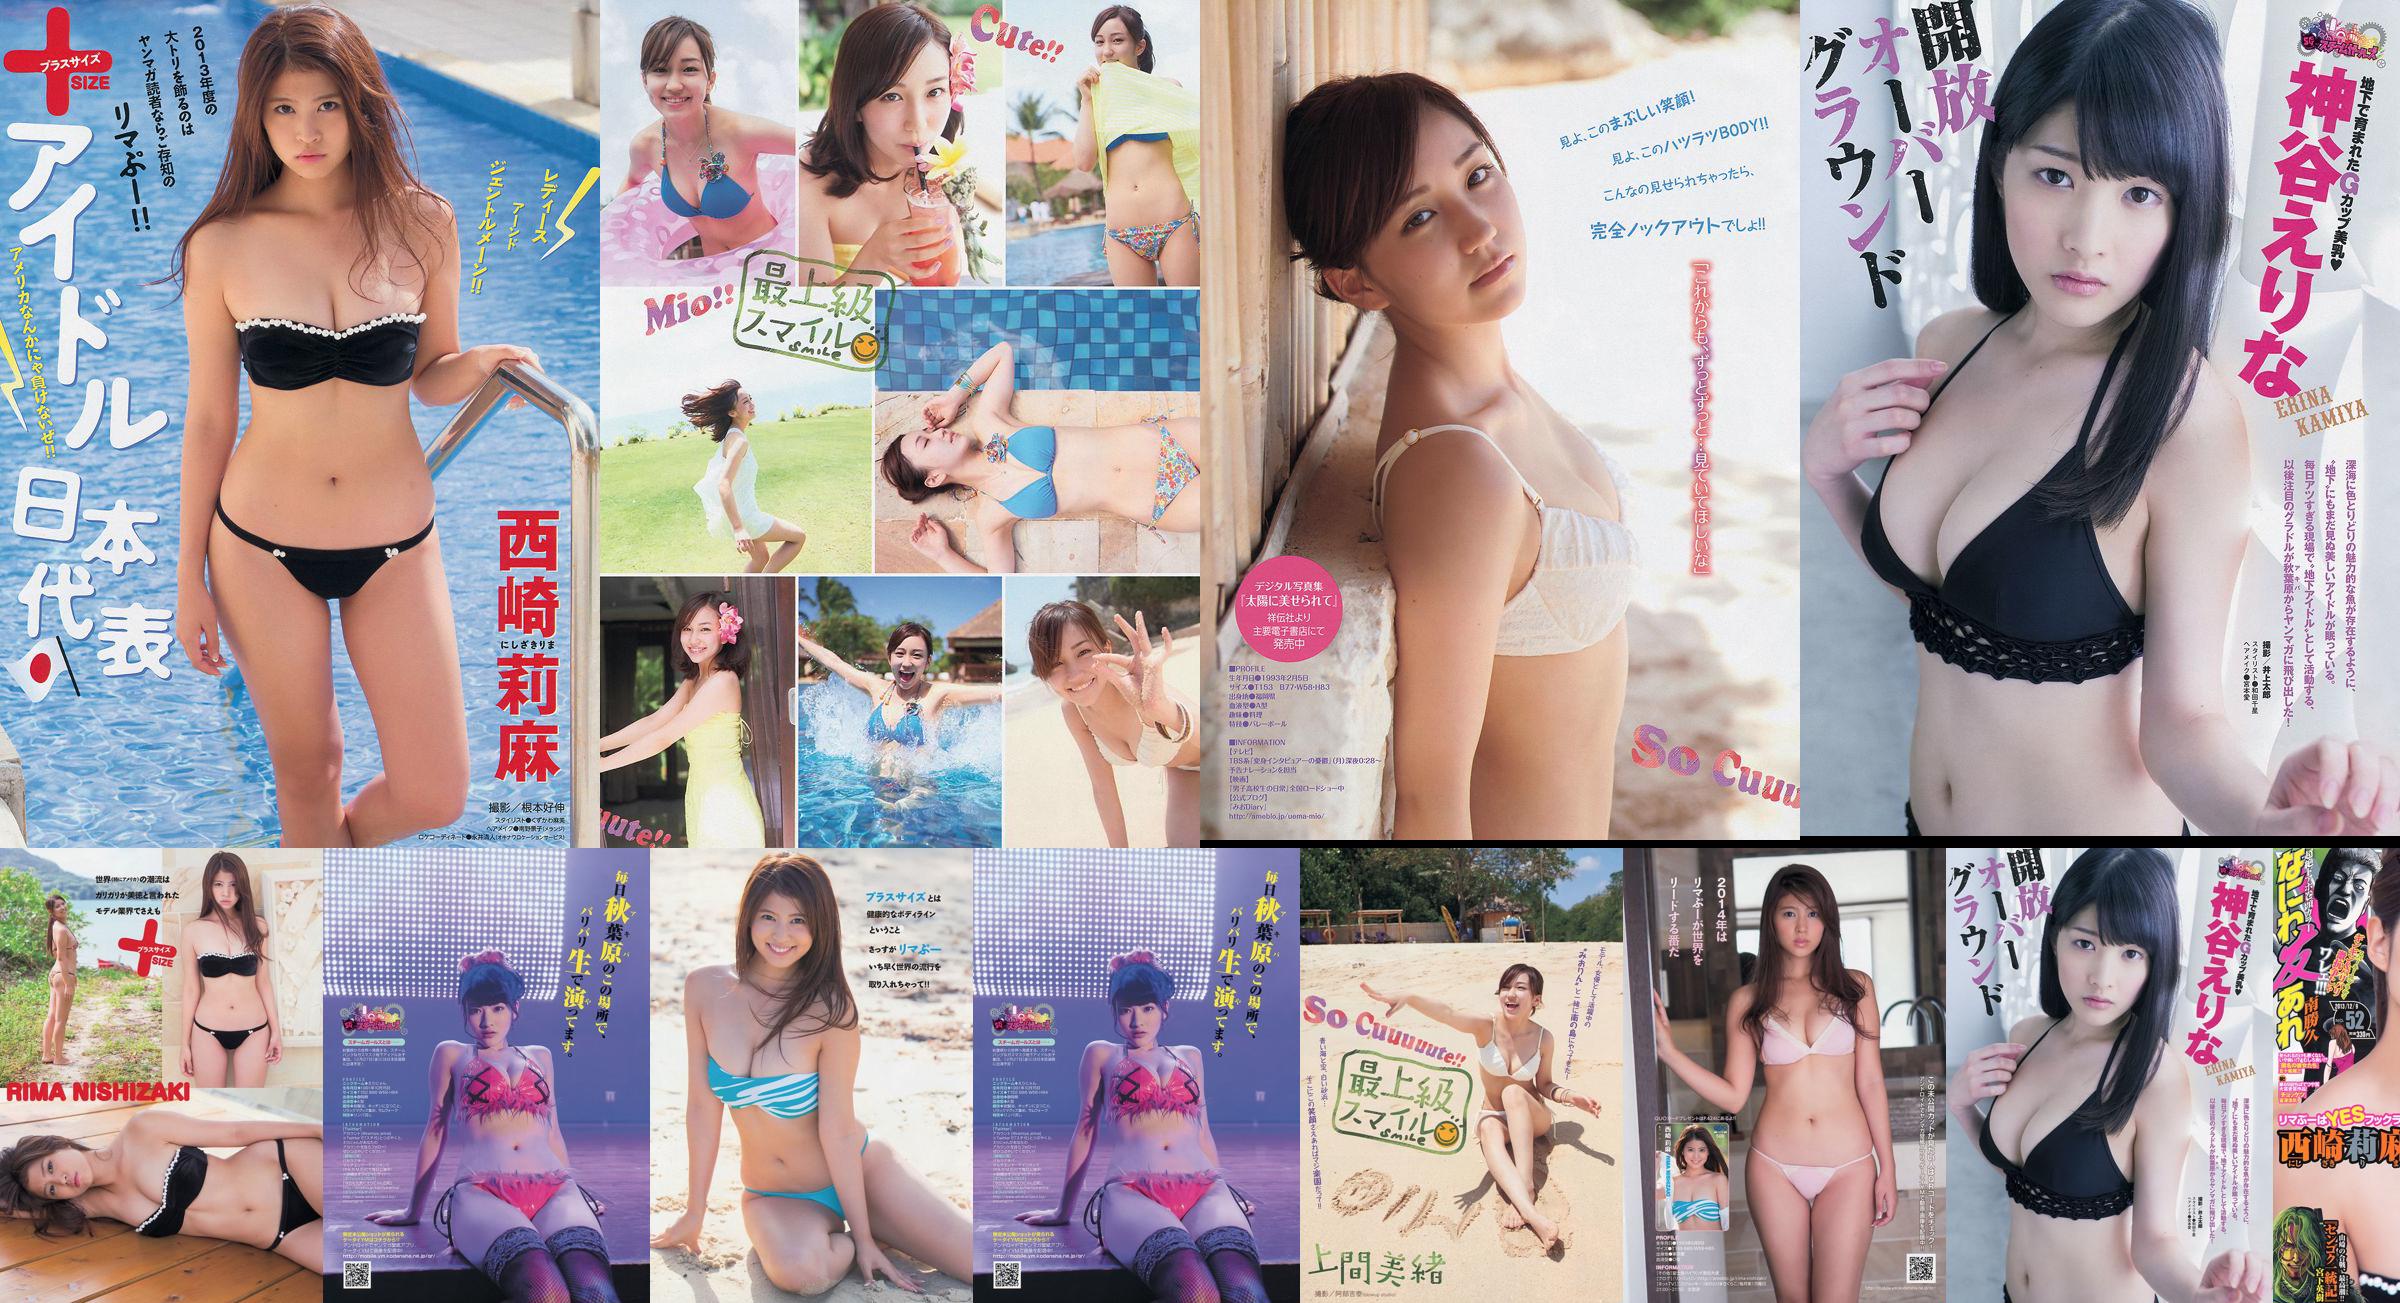 [Revista joven] Rima Nishizaki Mio Uema Erina Kamiya 2013 No.52 Photo Moshi No.0f2413 Página 5